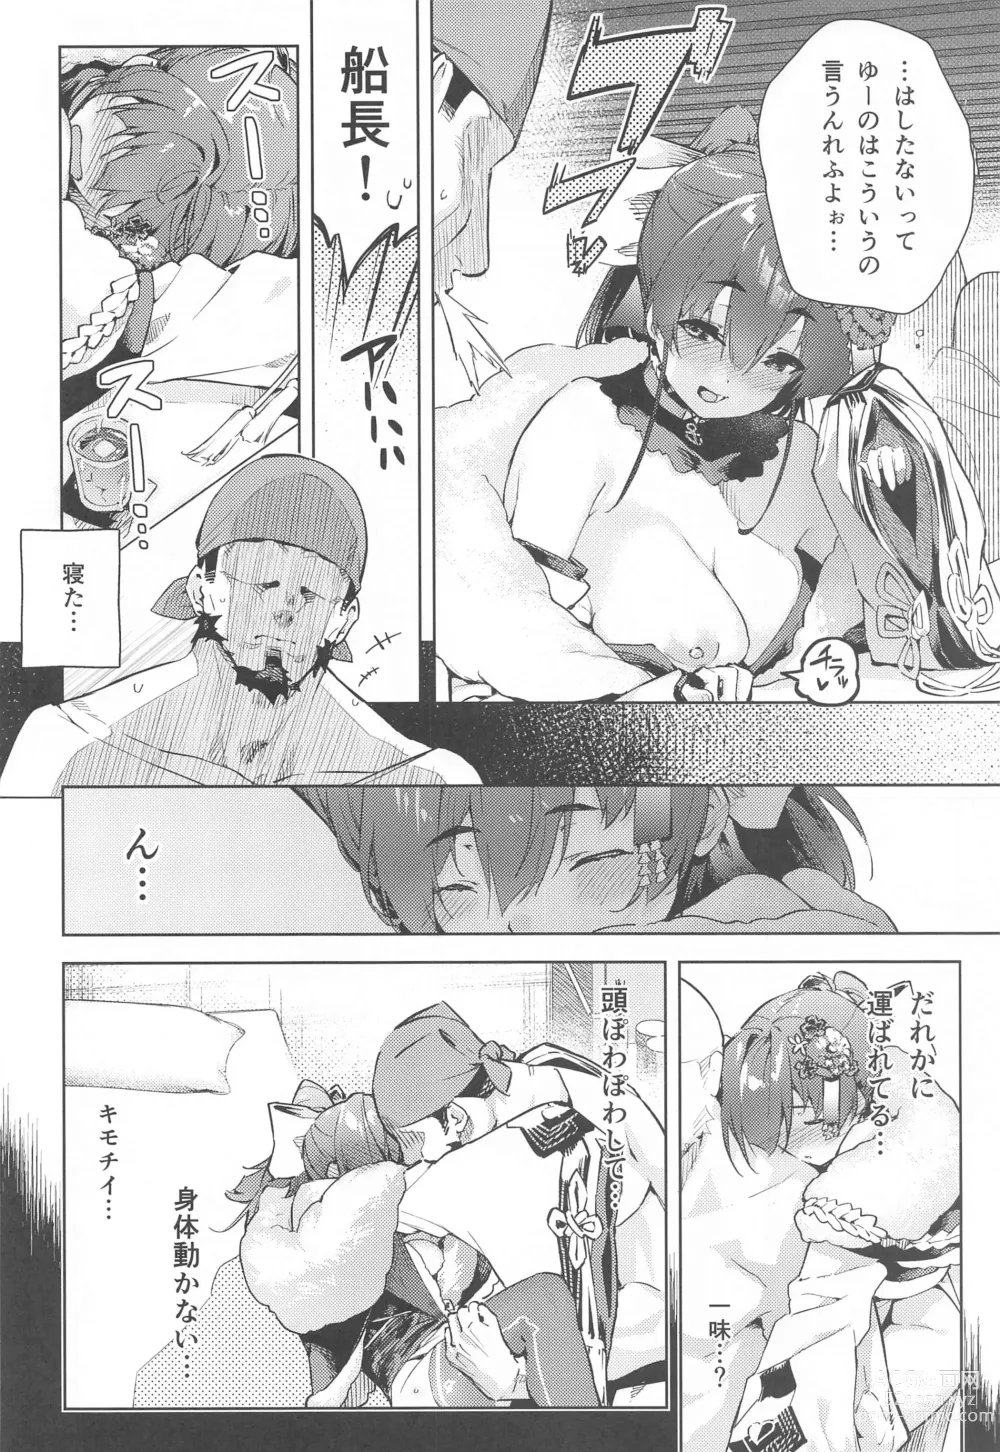 Page 3 of doujinshi Marine Senchou no Yopparai Archive